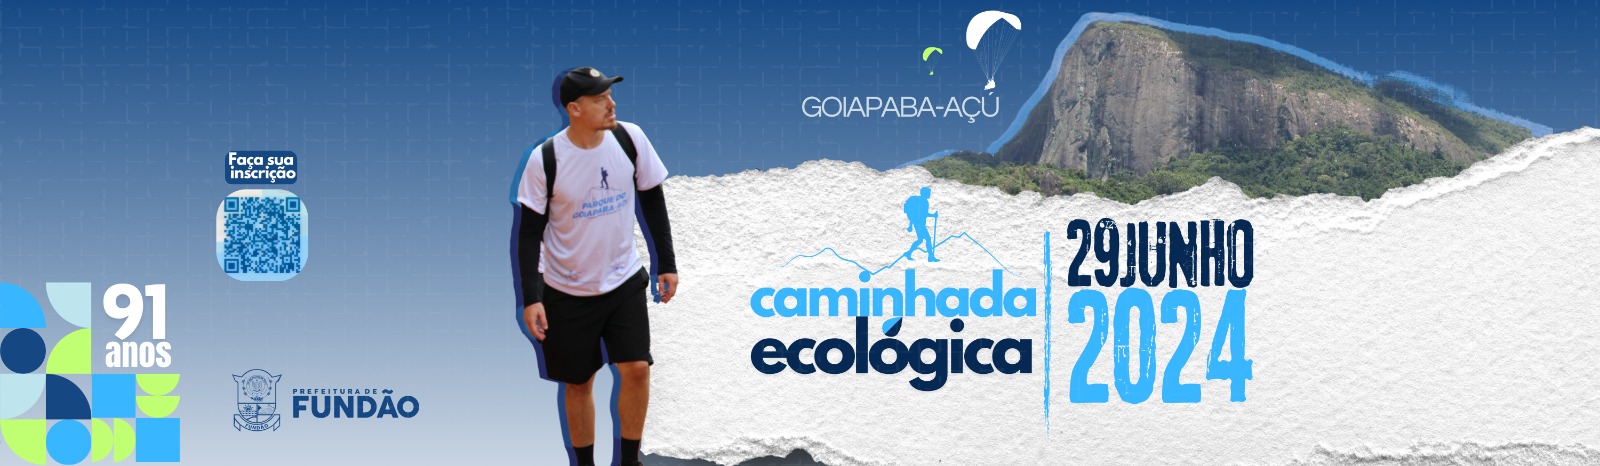 Imagem da notícia: Inscrições abertas para a Caminhada ecológica no parque do Goiapaba-açu. Faça sua inscrição! 